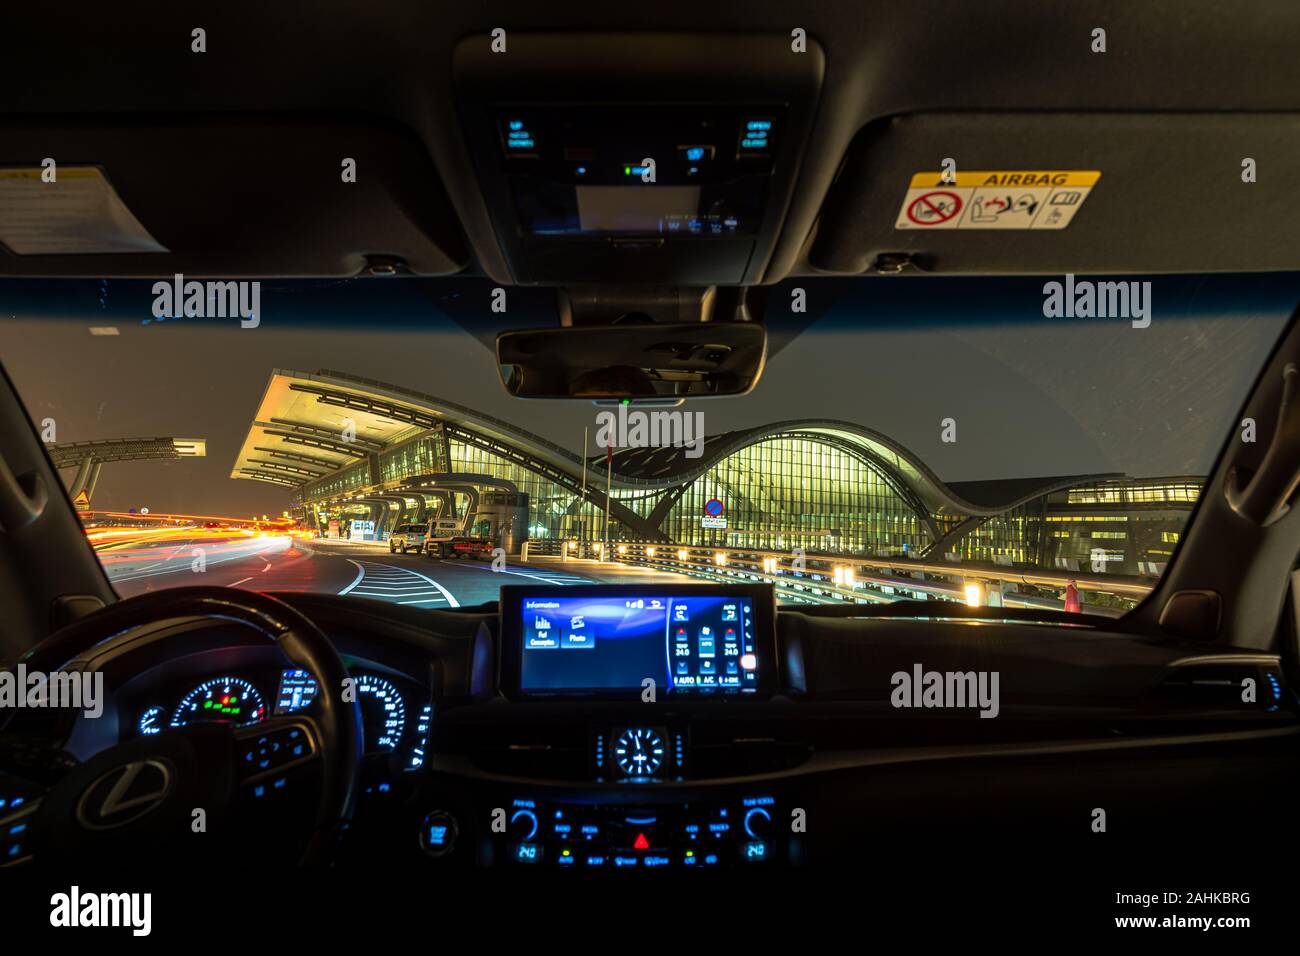 Lexus Lx 570 Interior View Stock Photo Alamy